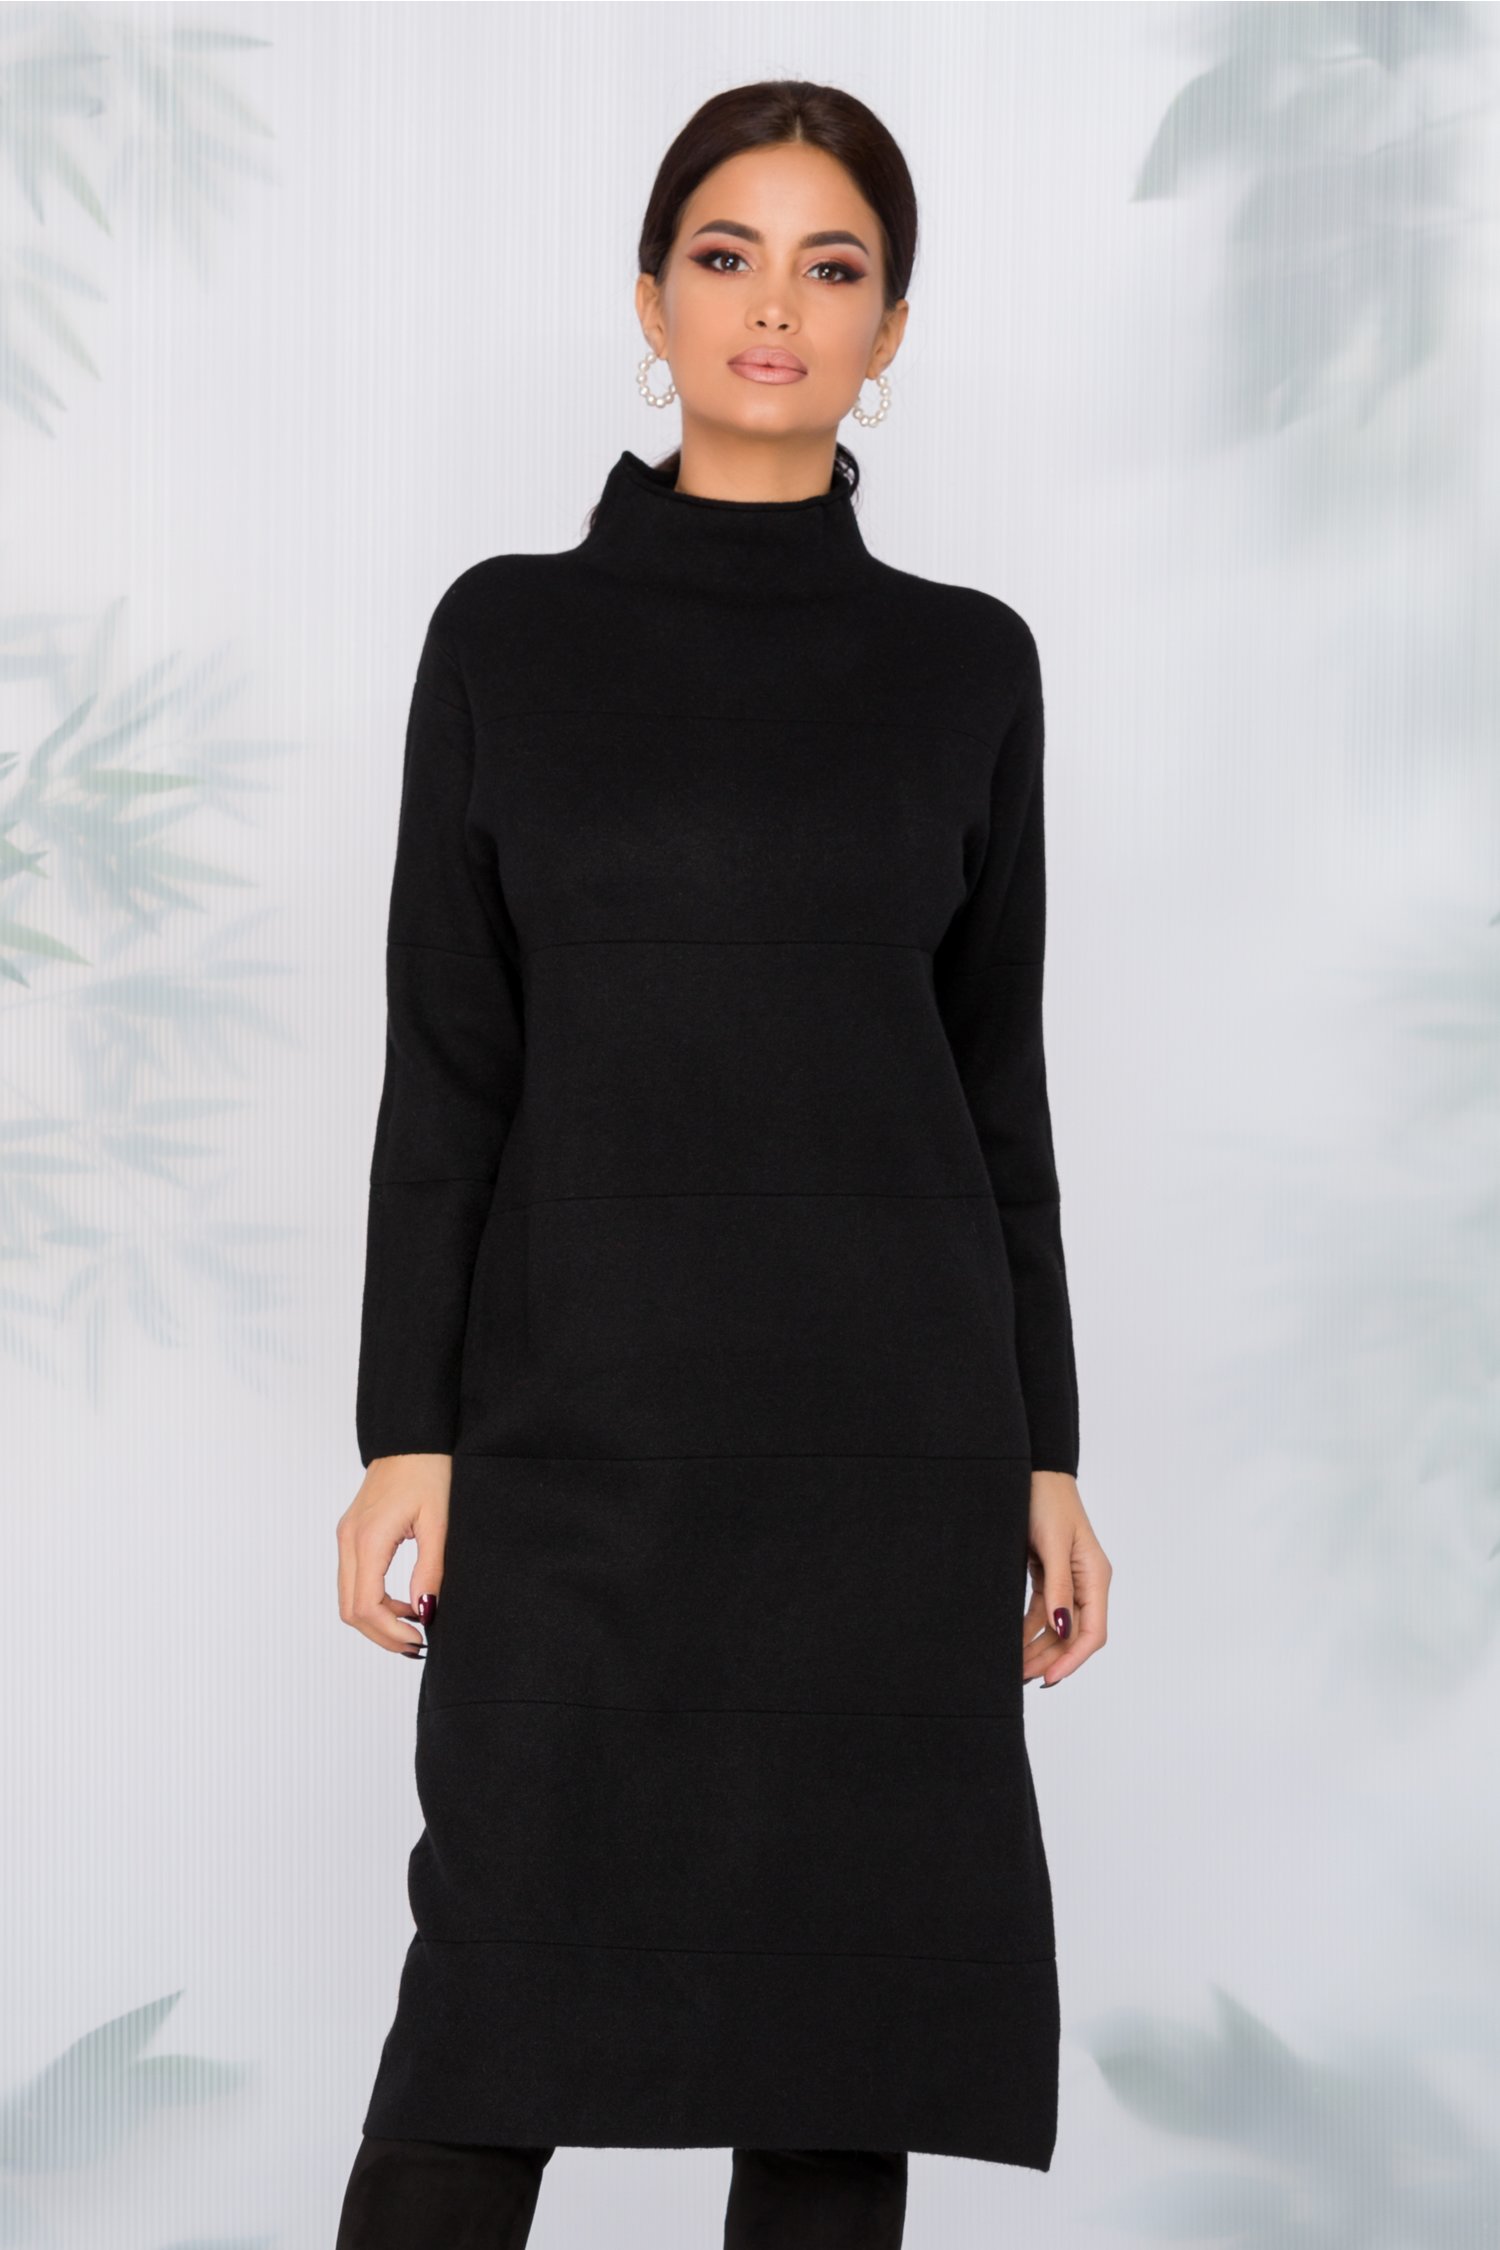 Rochie Aria neagra din tricot cu dungi in relief